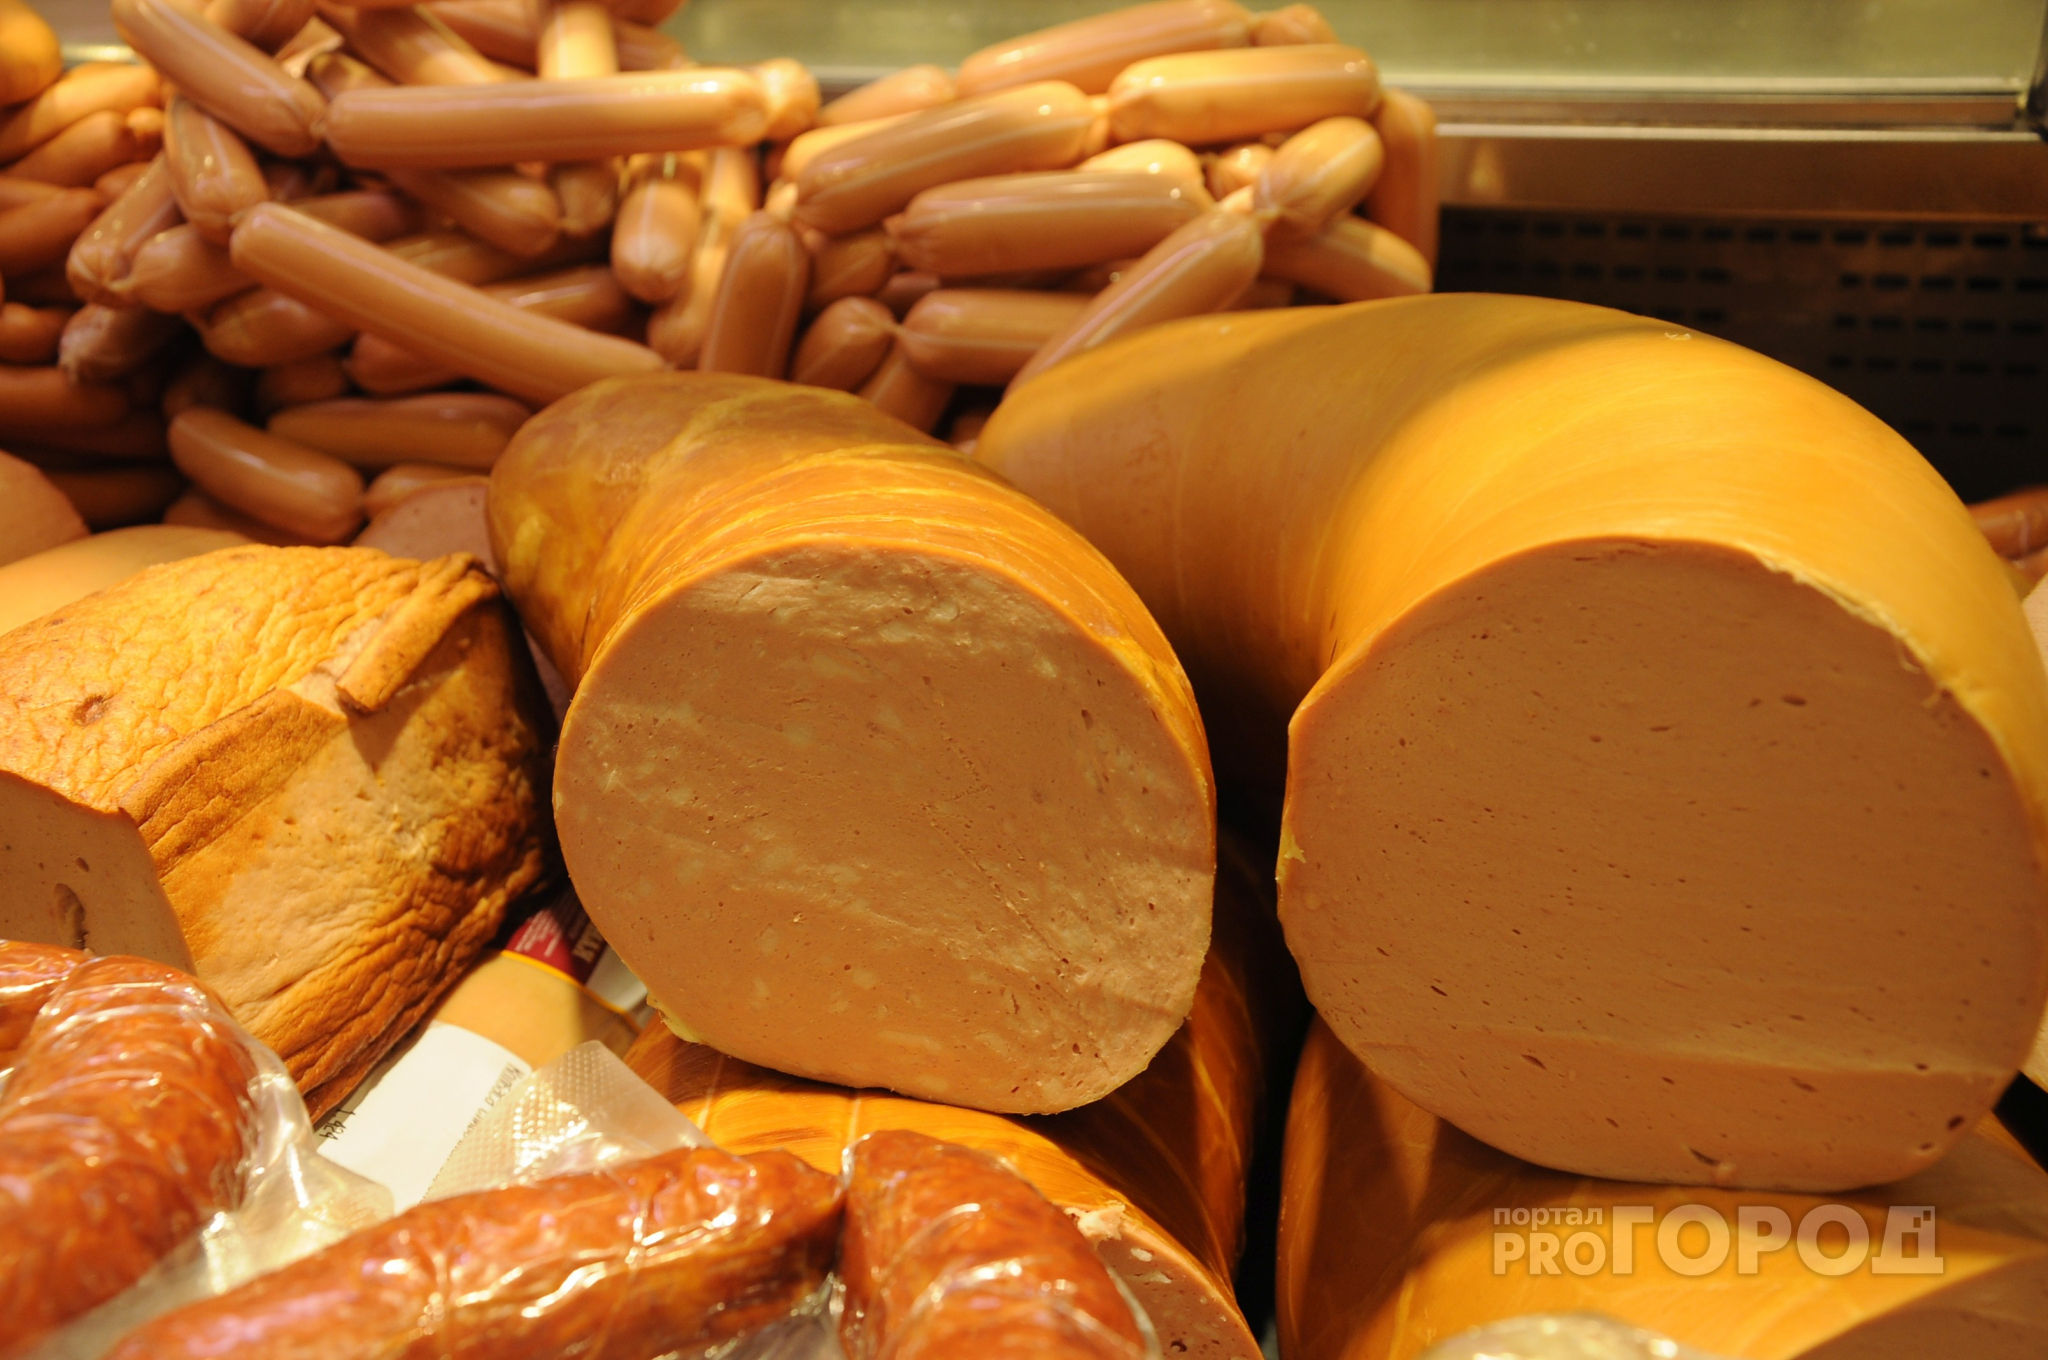 Специалисты назвали опасную колбасу: есть ли такая на прилавках Йошкар-Олы?